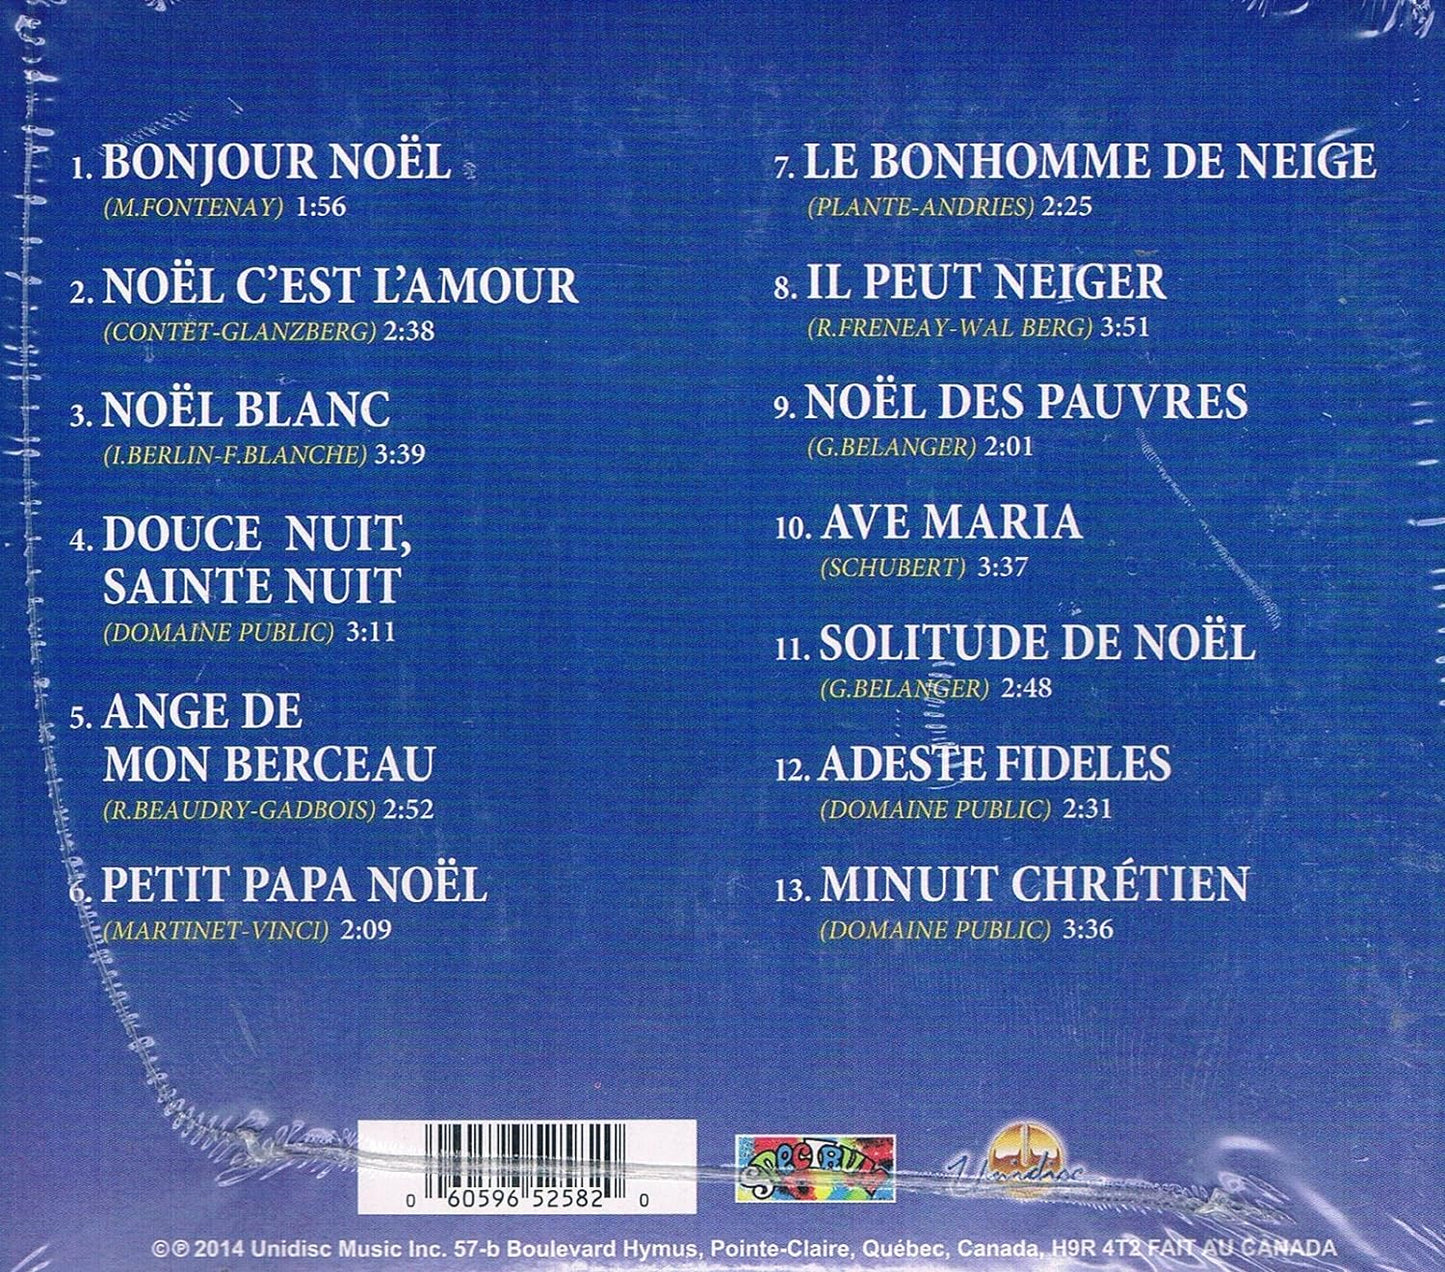 Paolo Noel Chante Noel [Audio CD] Paolo Noel